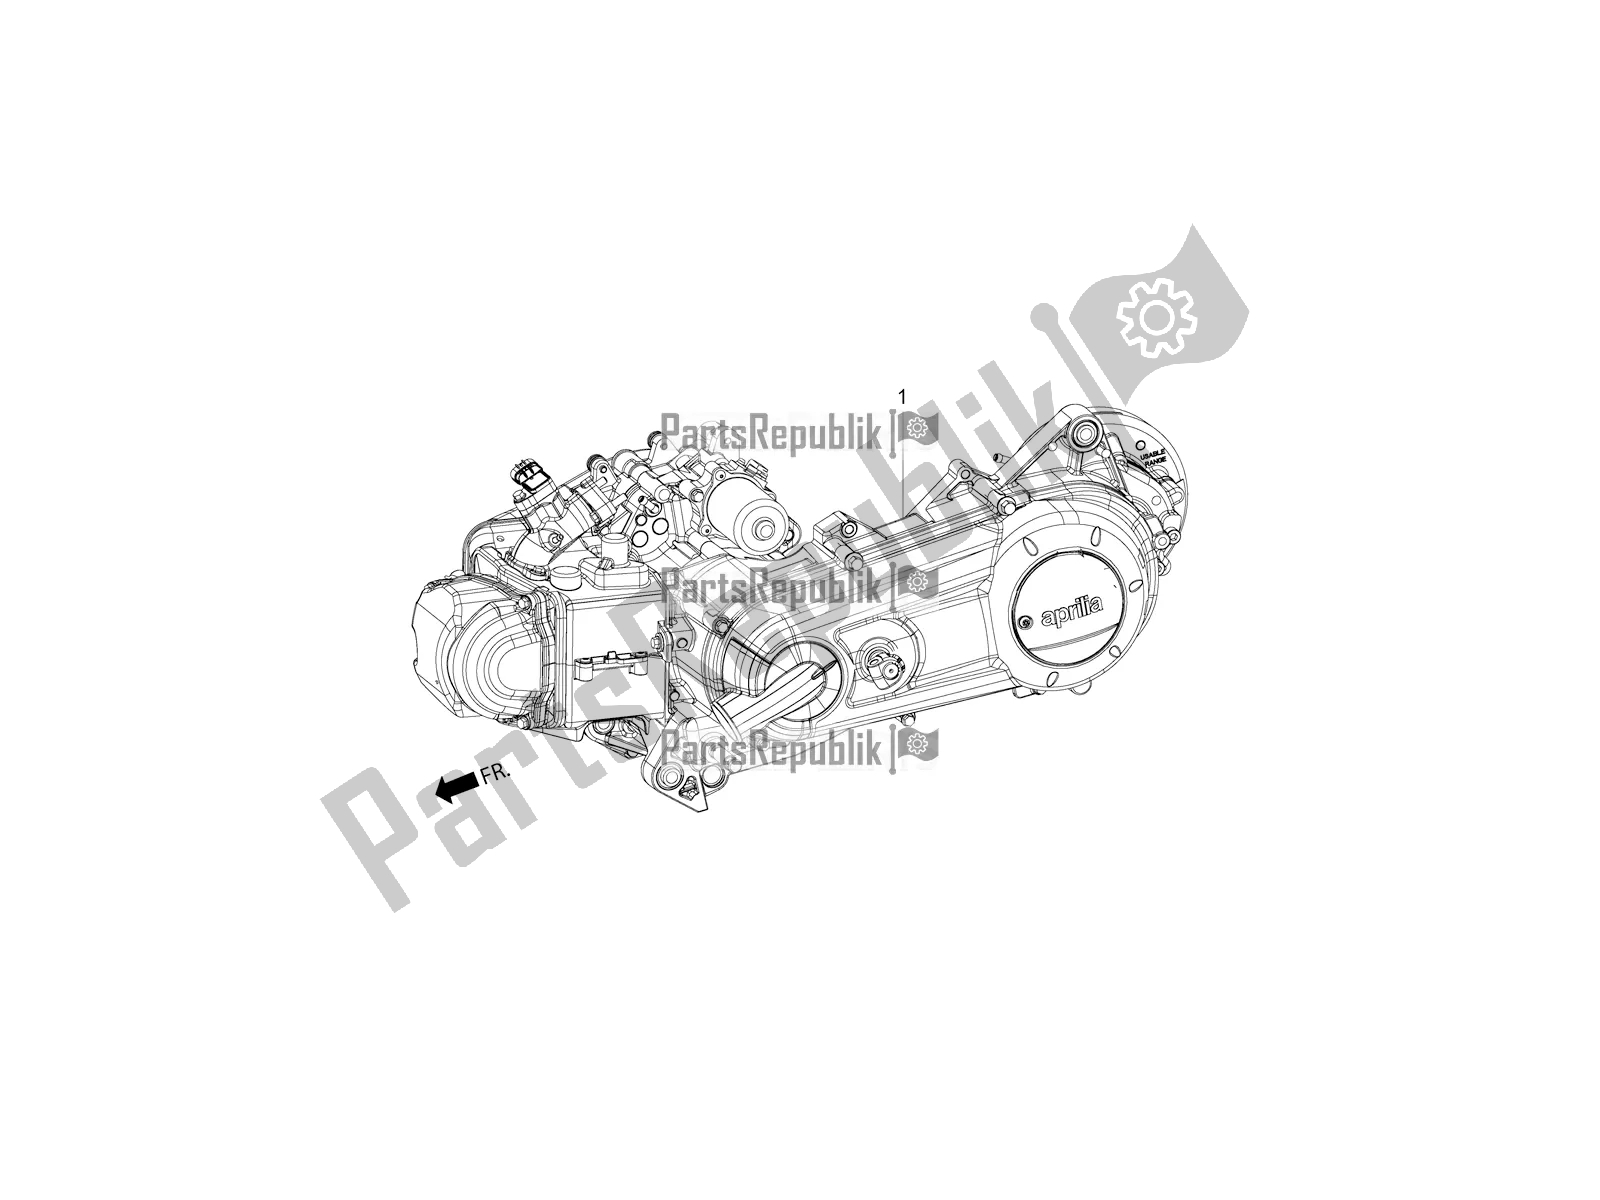 Alle onderdelen voor de Complete Engine van de Aprilia SR Motard 150 ABS Apac 2021